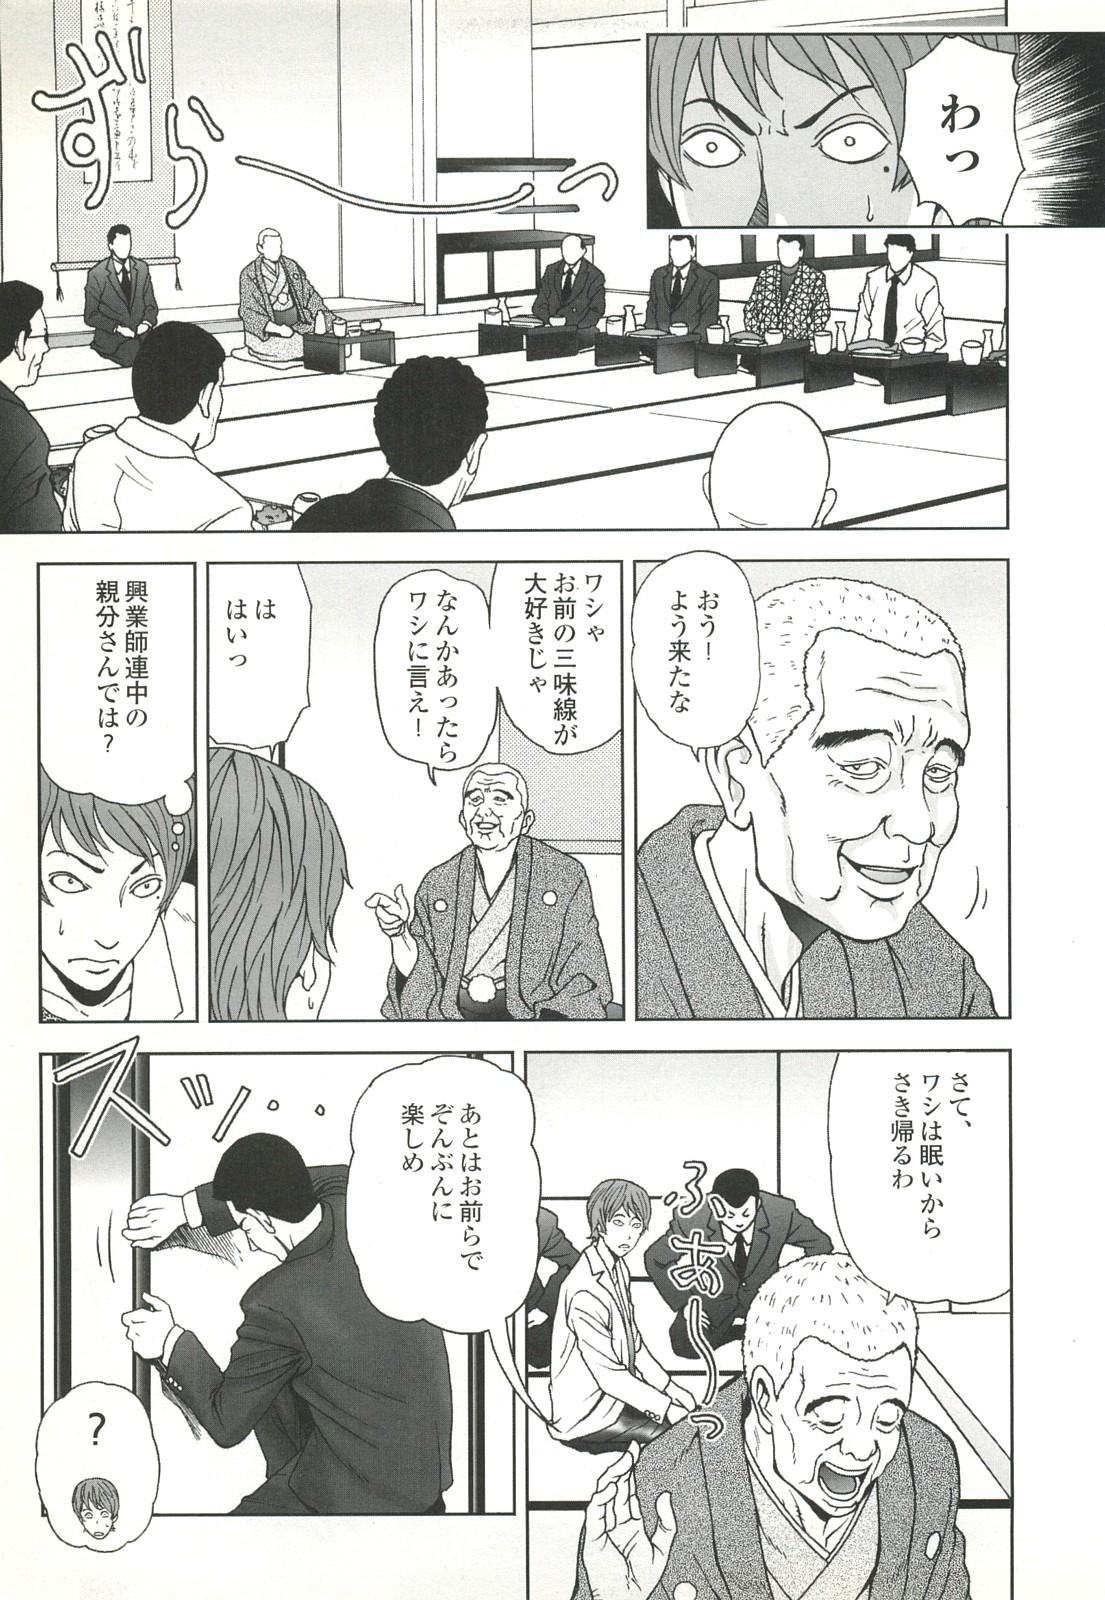 コミック裏モノJAPAN Vol.18 今井のりたつスペシャル号 38